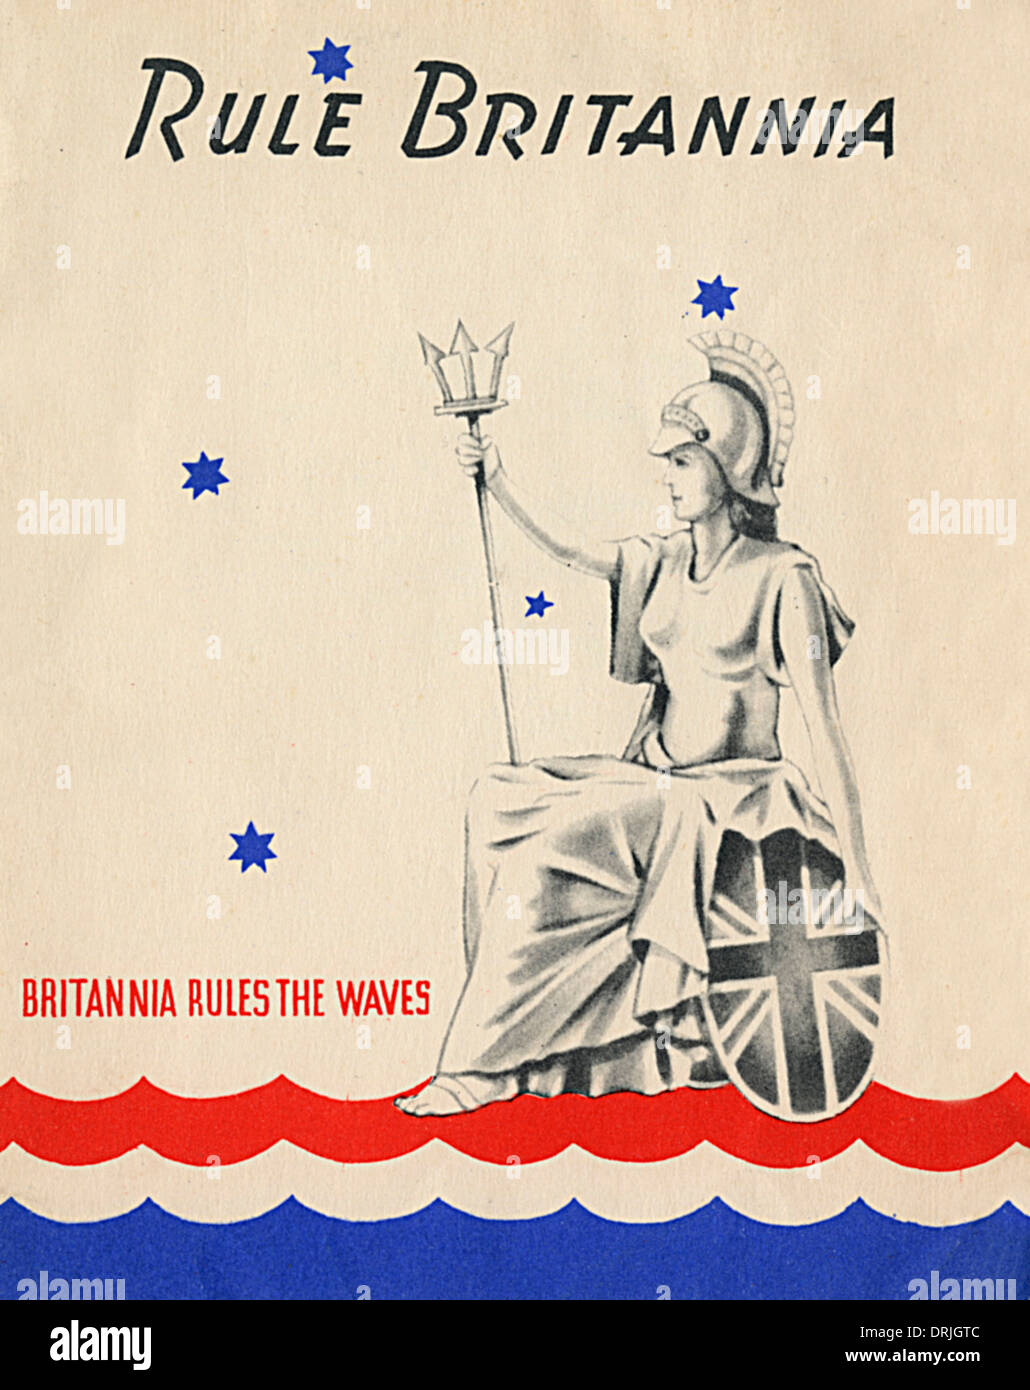 rule-britannia-britannia-rules-the-waves-DRJGTC.jpg